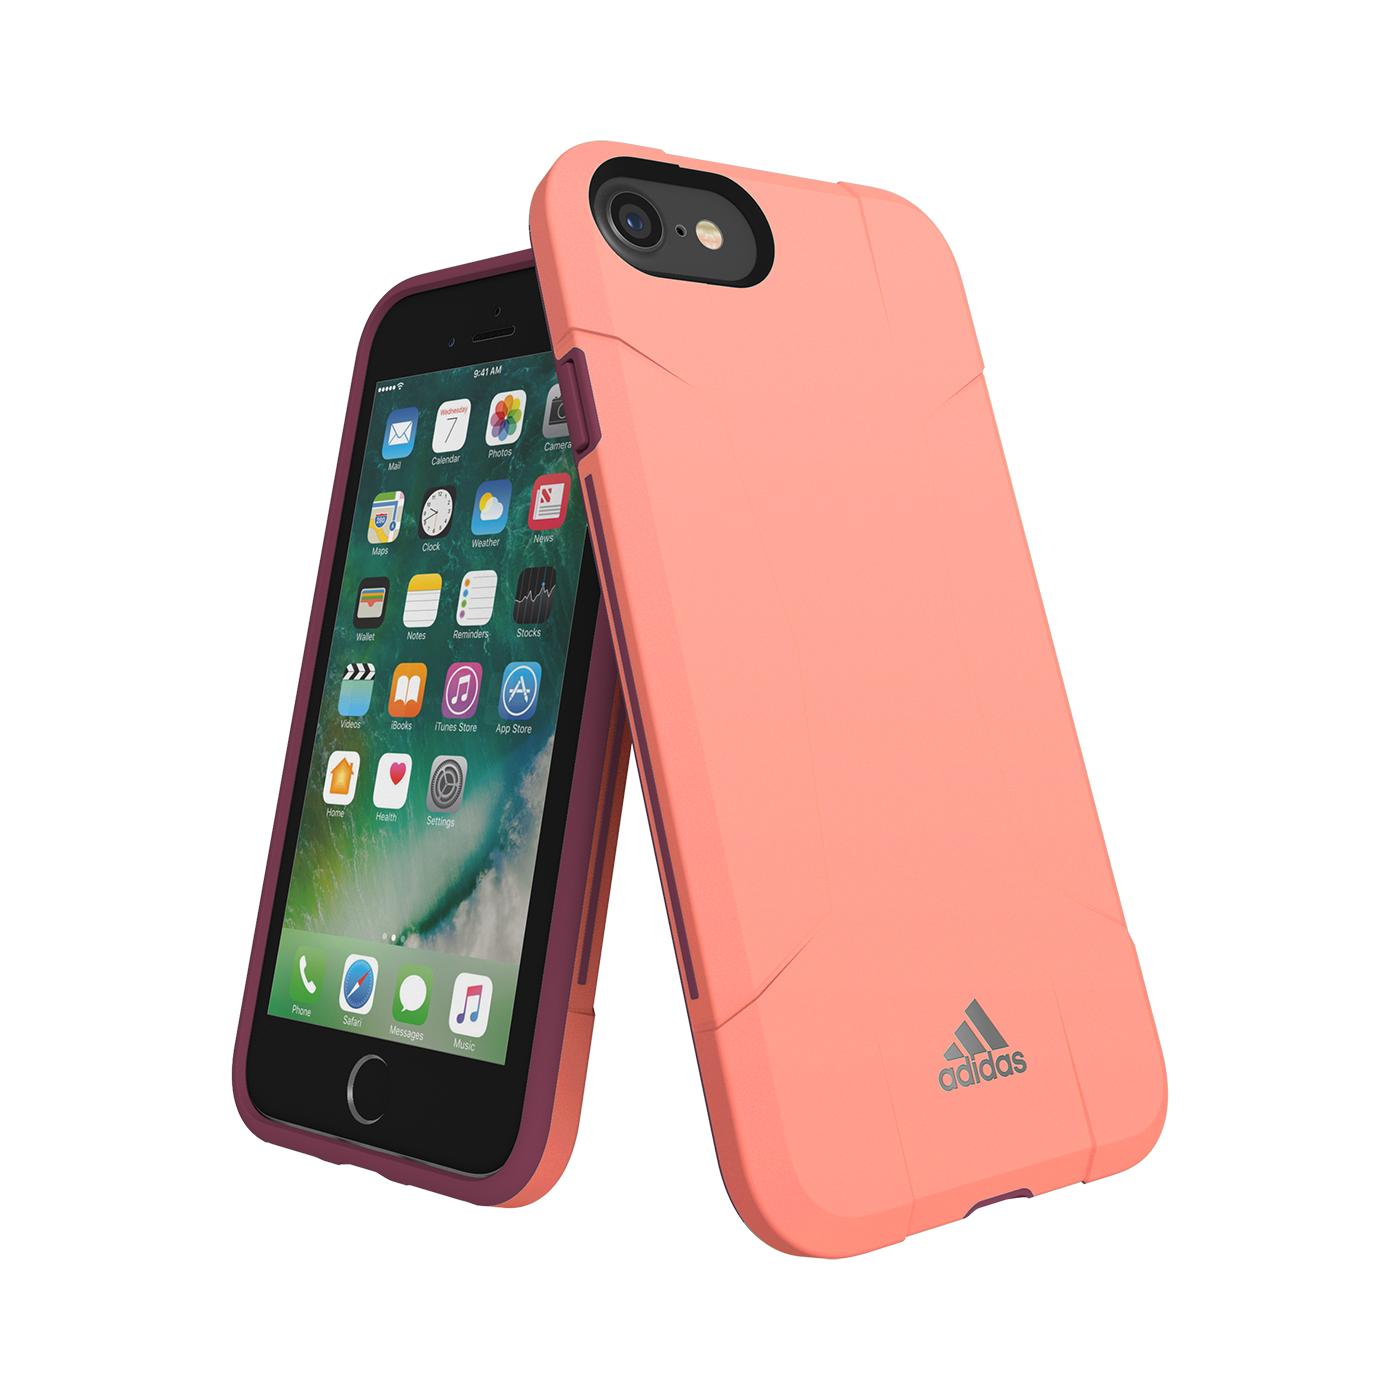 Heerlijk Tegenstrijdigheid verbinding verbroken Buy Solo Case Pink iPhone | adidas-cases